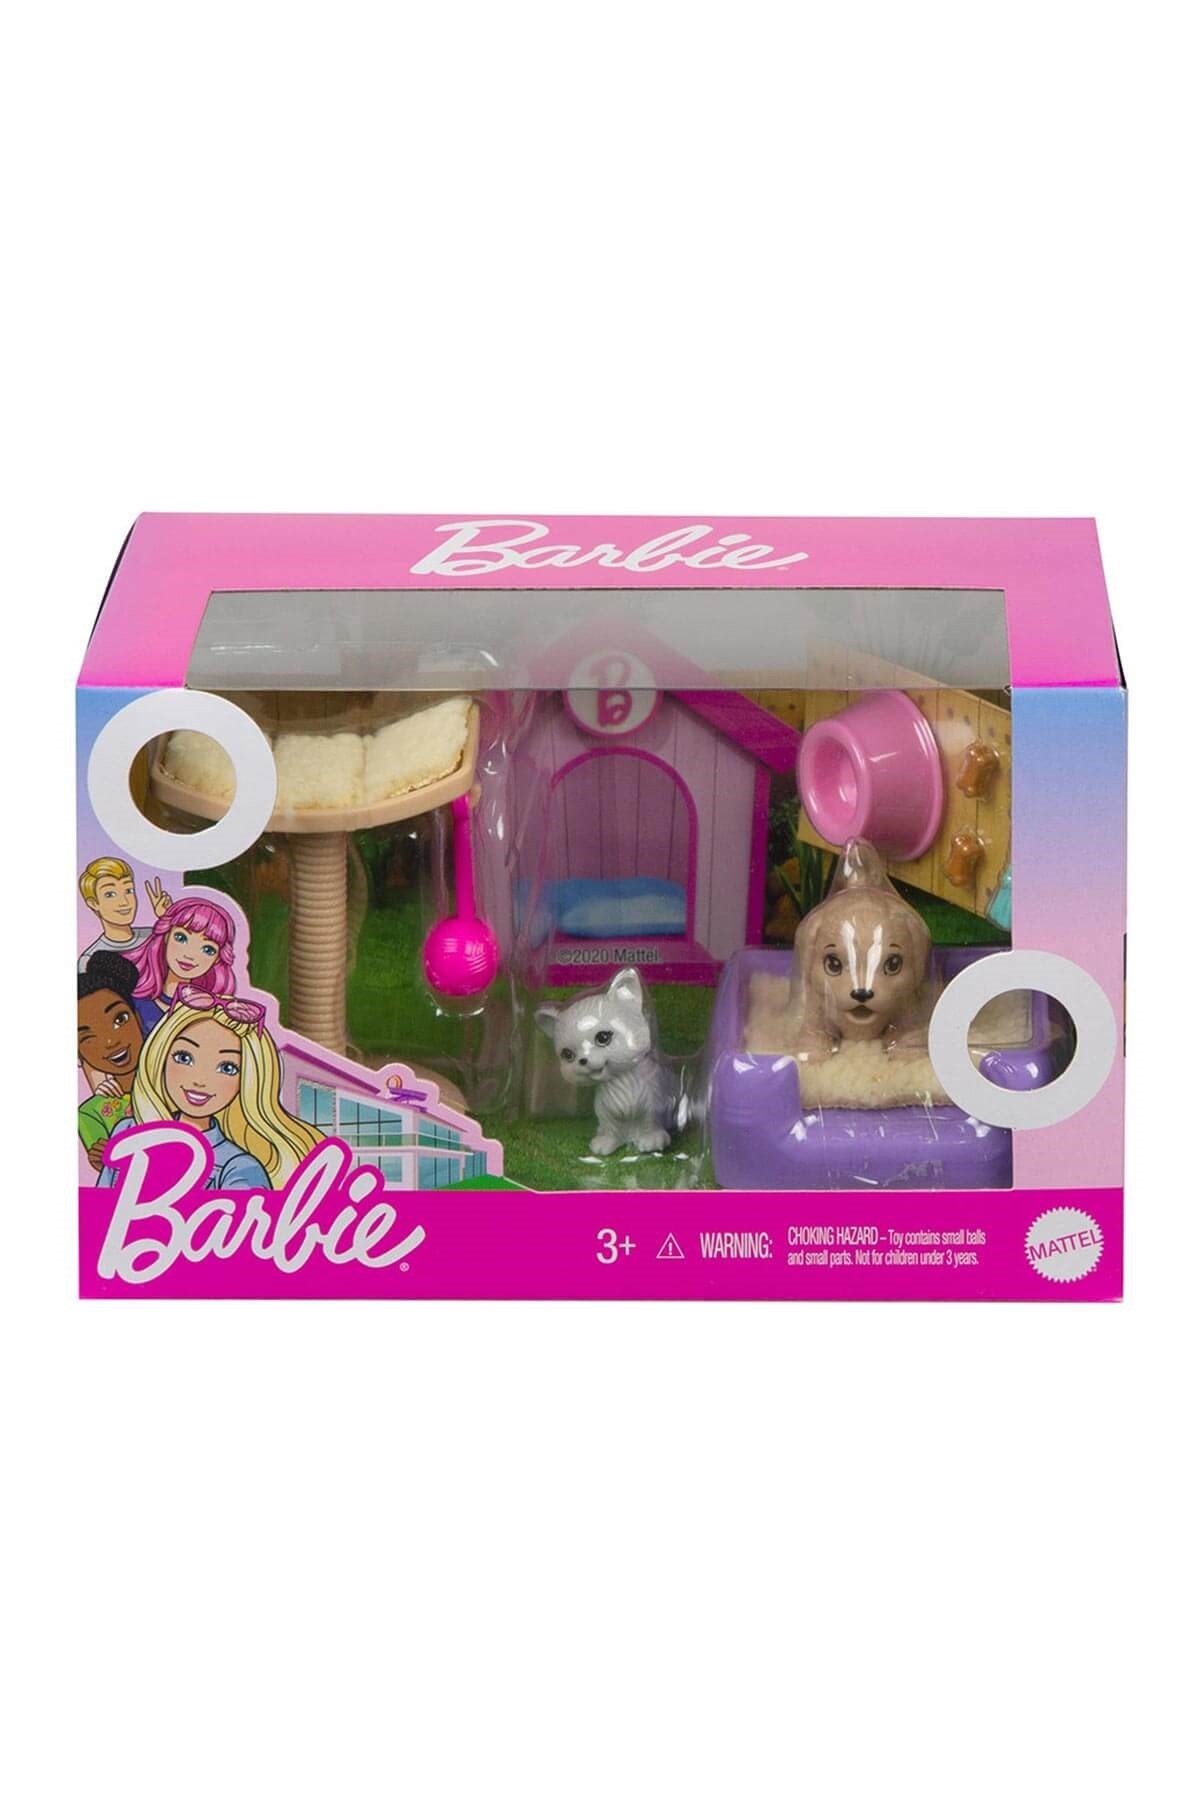 Barbie'nin Ev Aksesuarları Serisi GRG59